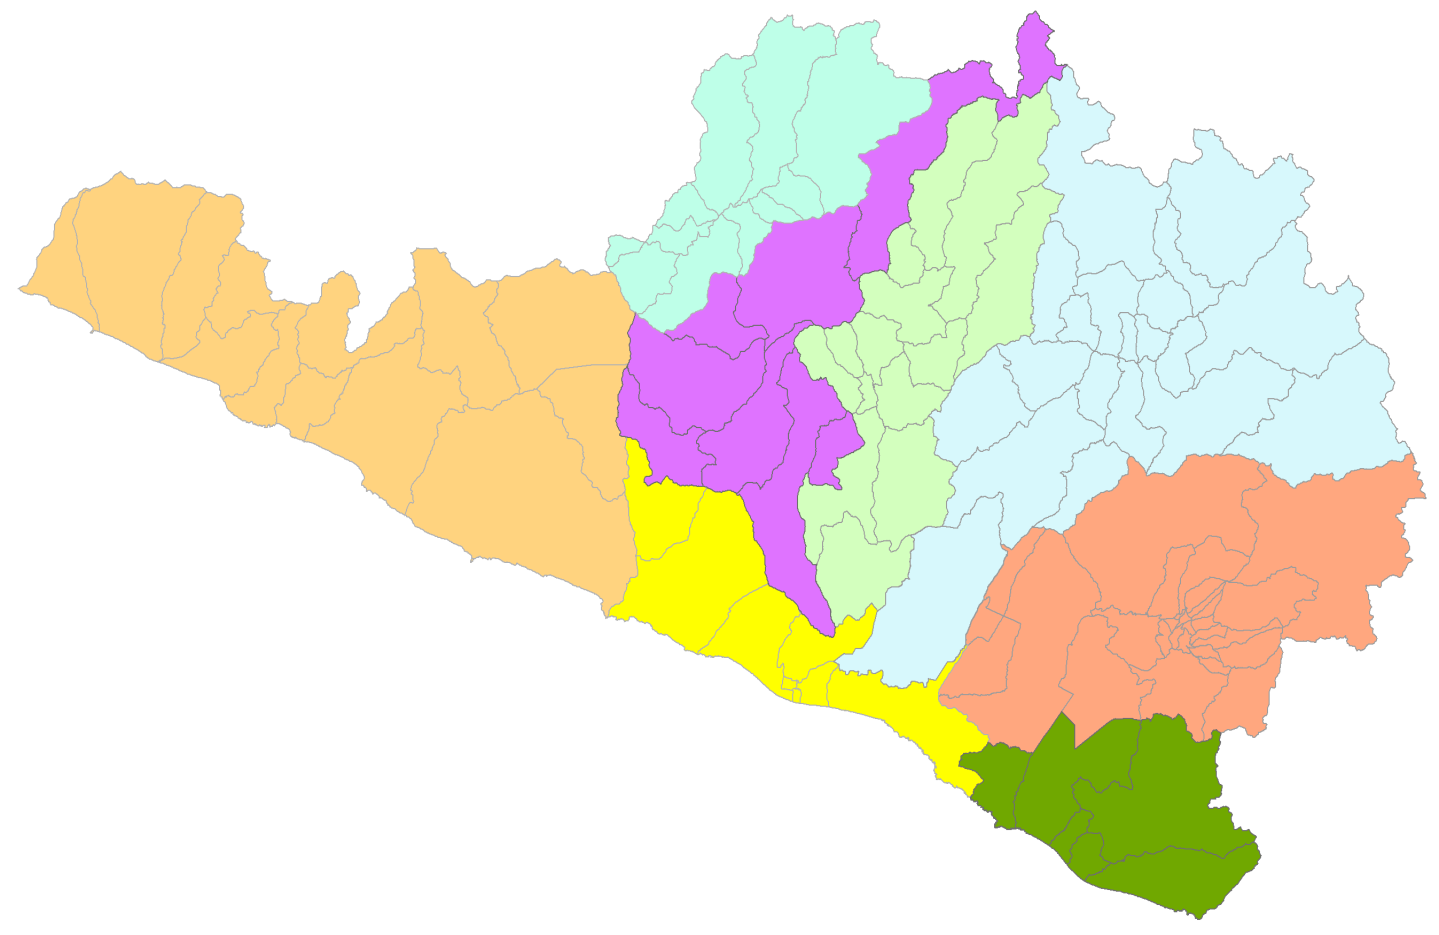 Gobierno Regional de Arequipa Gerencia de Salud Arequipa UBICACIÓN GEOGRÁFICA: El departamento de Arequipa está ubicado en el sur del país, con las siguientes coordenadas geográficas: 70º48'15" a